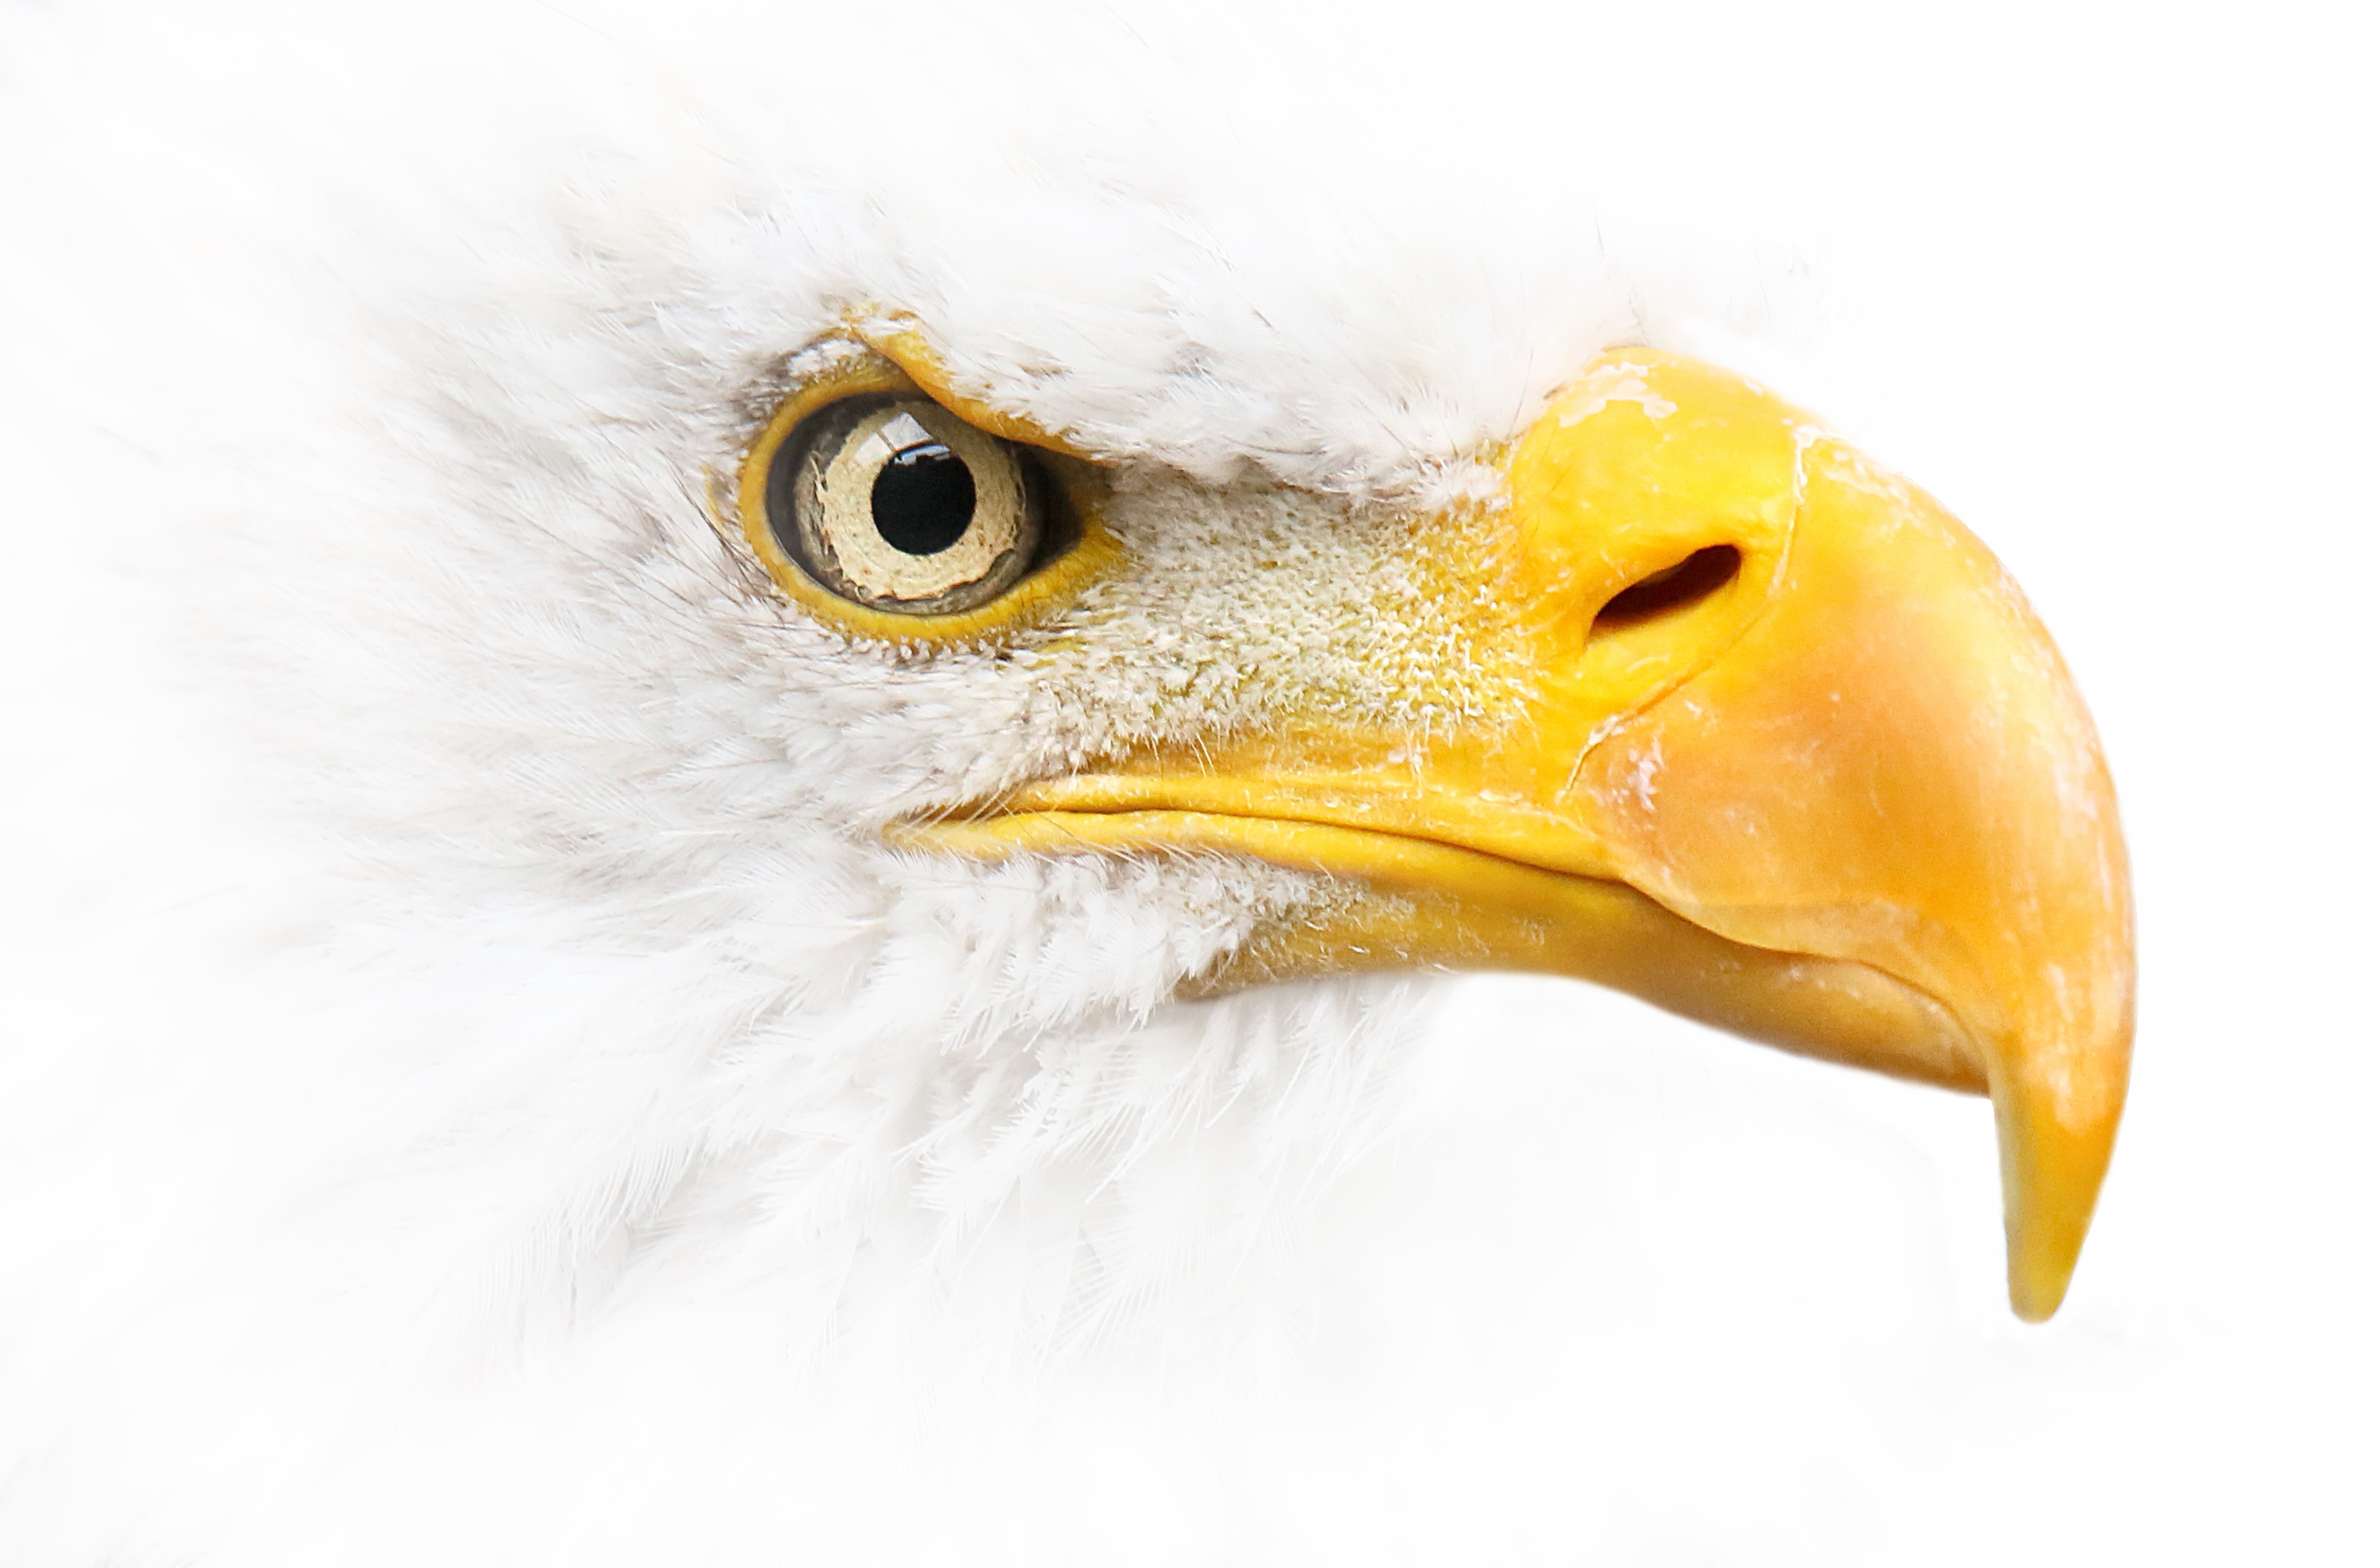 Descarga gratuita de fondo de pantalla para móvil de Animales, Águila Calva, Aves.